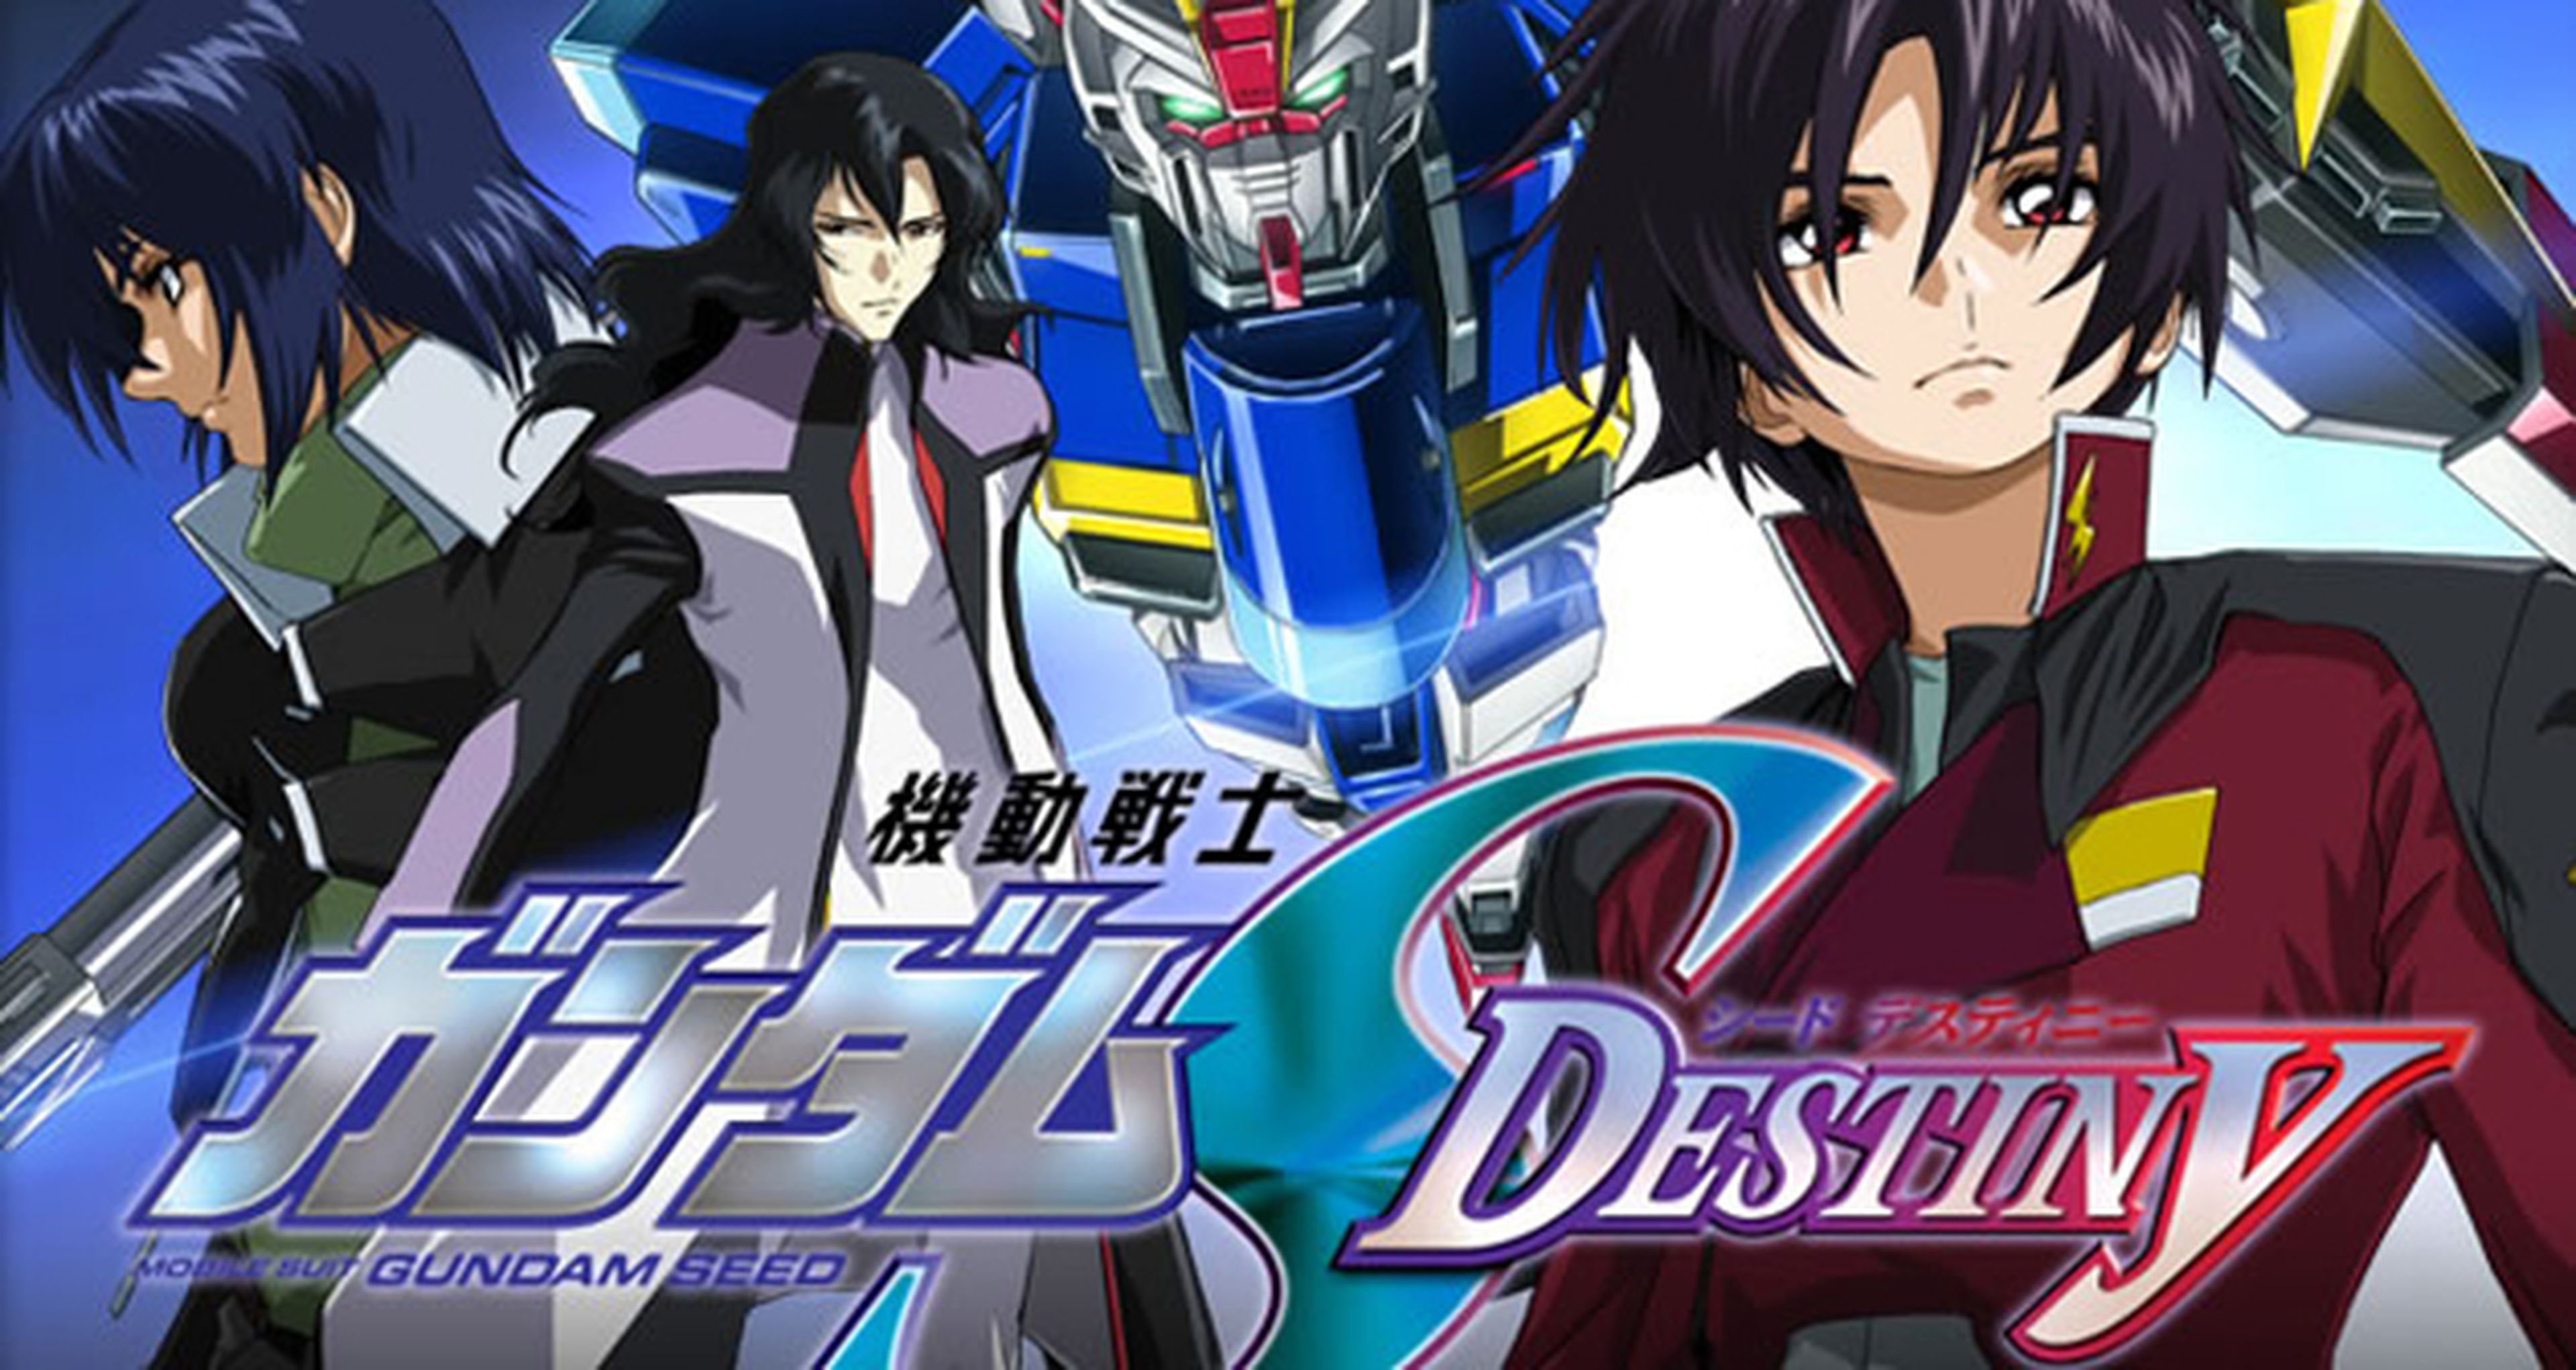 Mobile Suit Gundam Seed Destiny HD, en abril